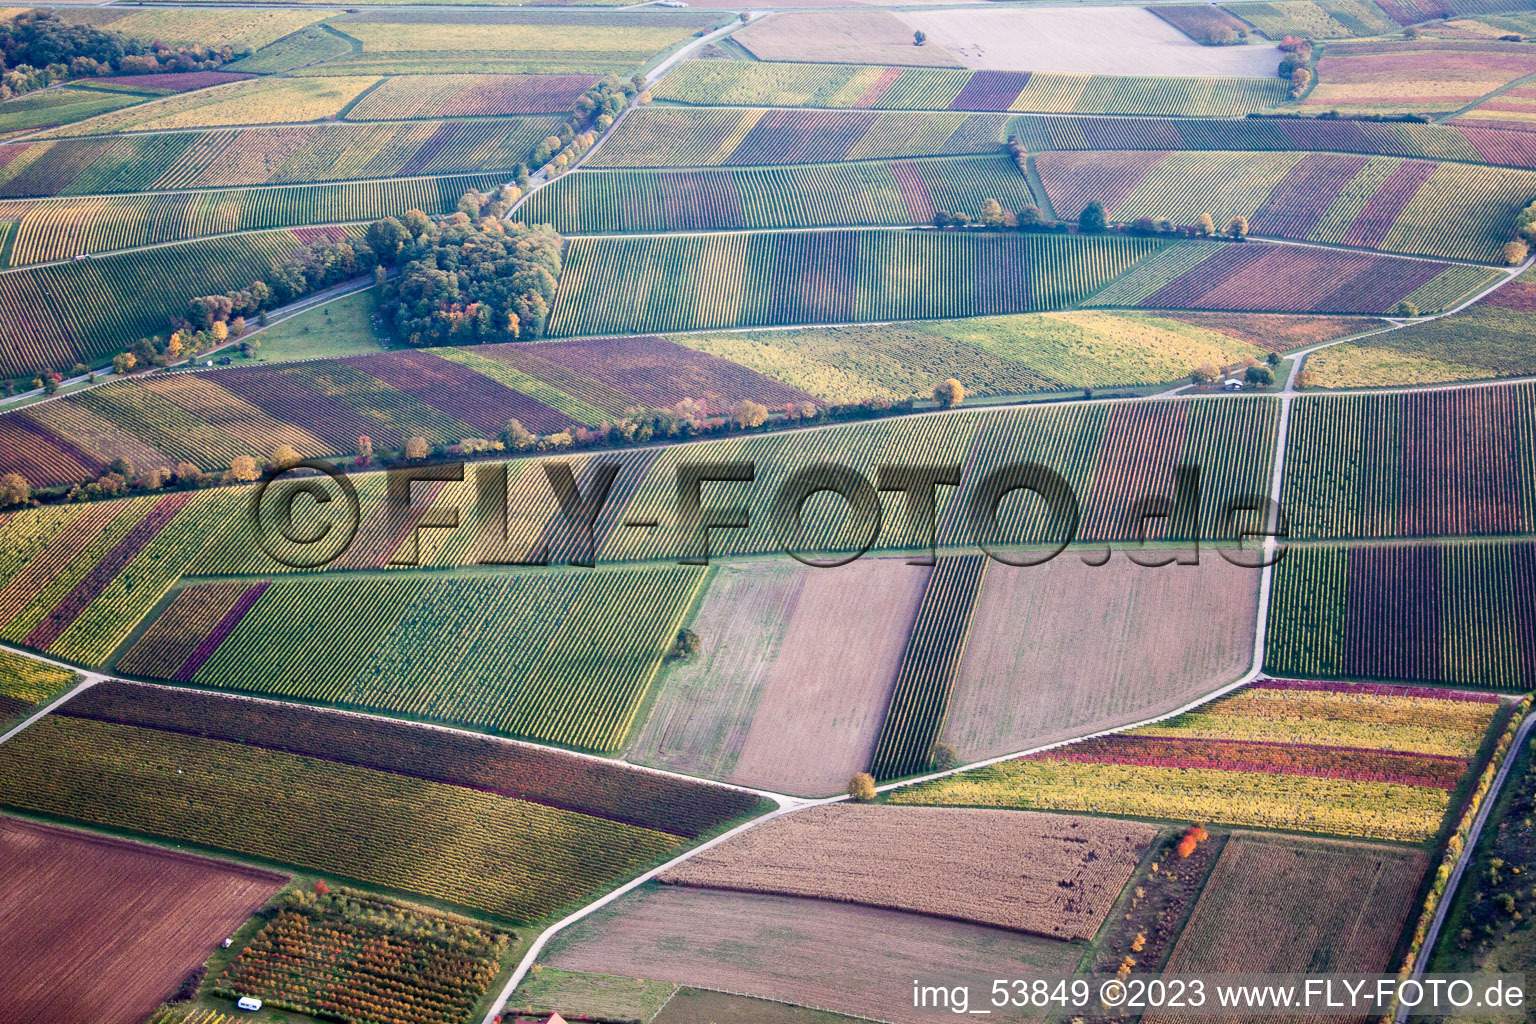 Autumn coloured Fields of wine cultivation landscape in the district Heuchelheim in Heuchelheim-Klingen in the state Rhineland-Palatinate